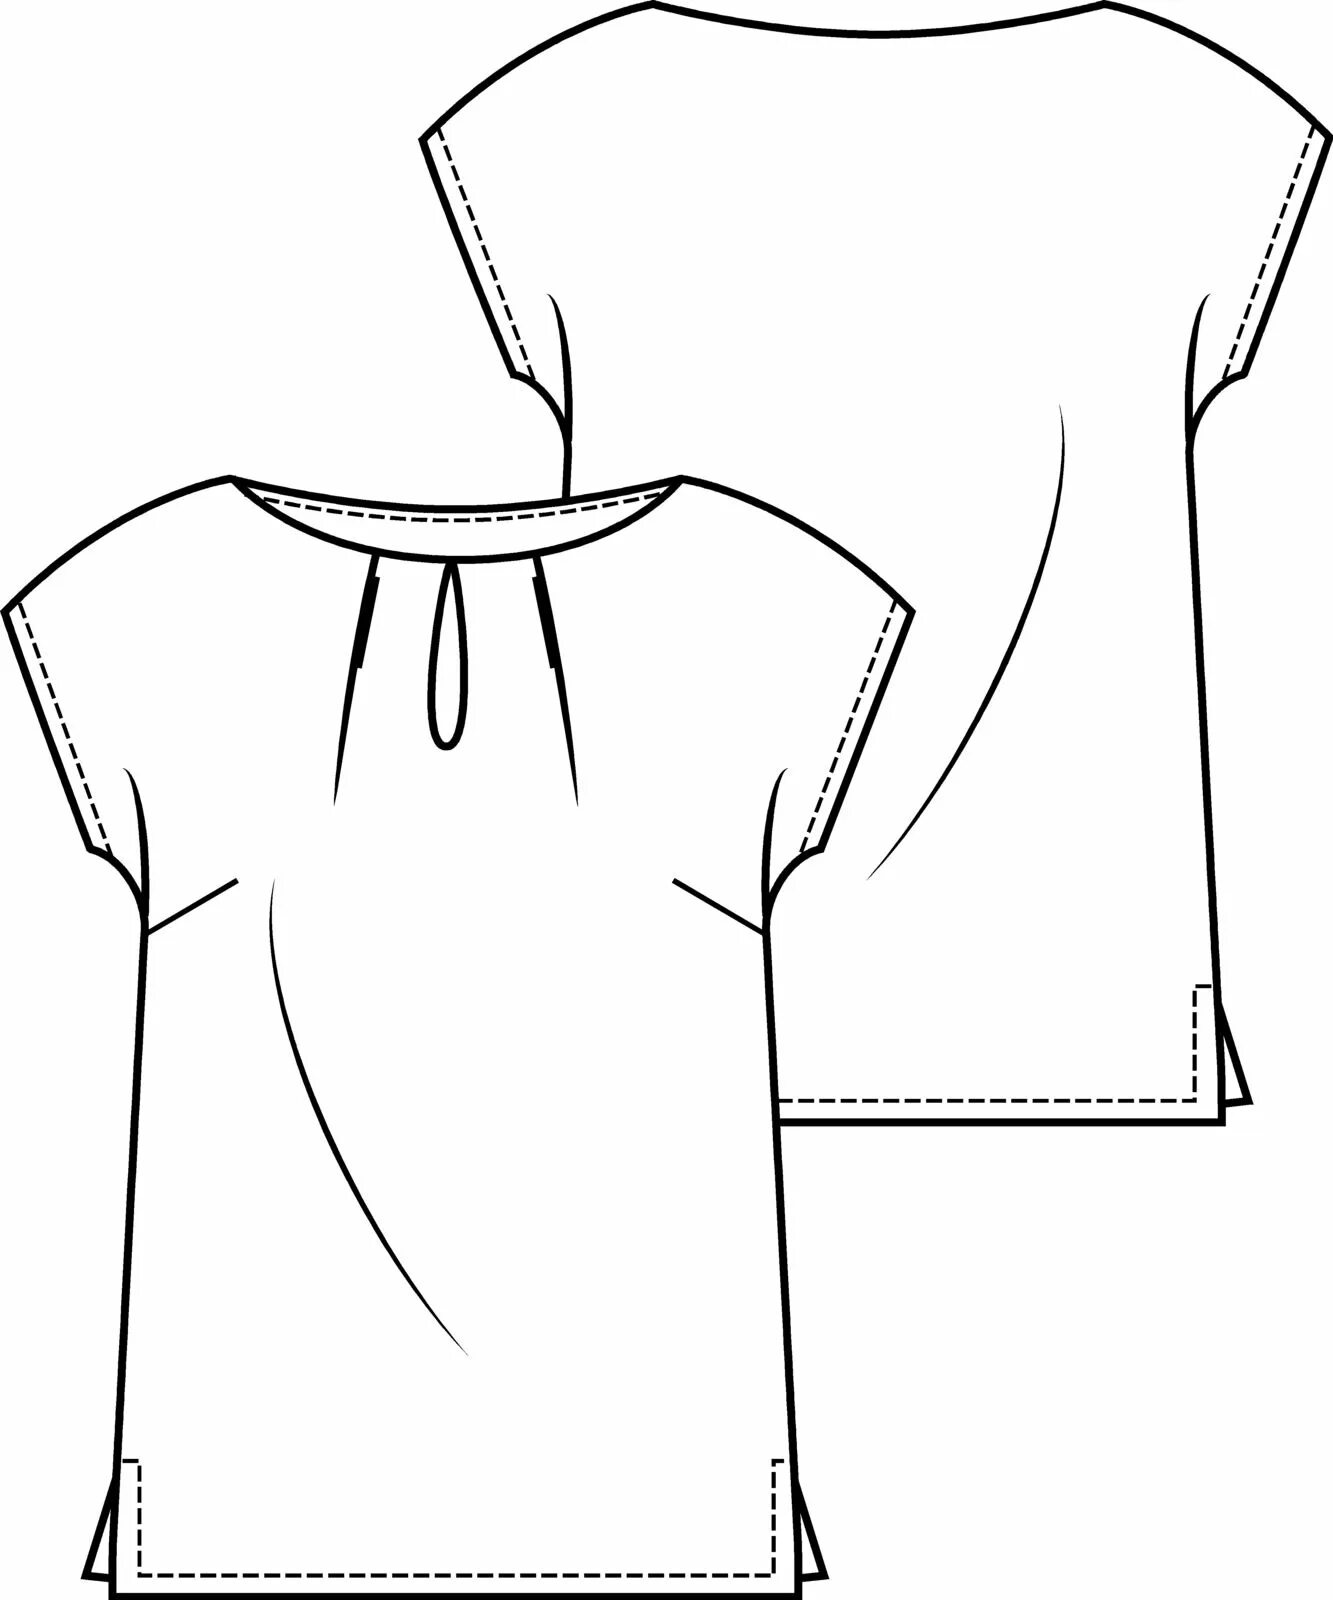 Цельнокроеная блузка выкройка. Блузка-футболка с цельнокроеным рукавом. Эскиз туники. Лекало блузки с цельнокроеным рукавом. Туника с цельнокроеным рукавом.